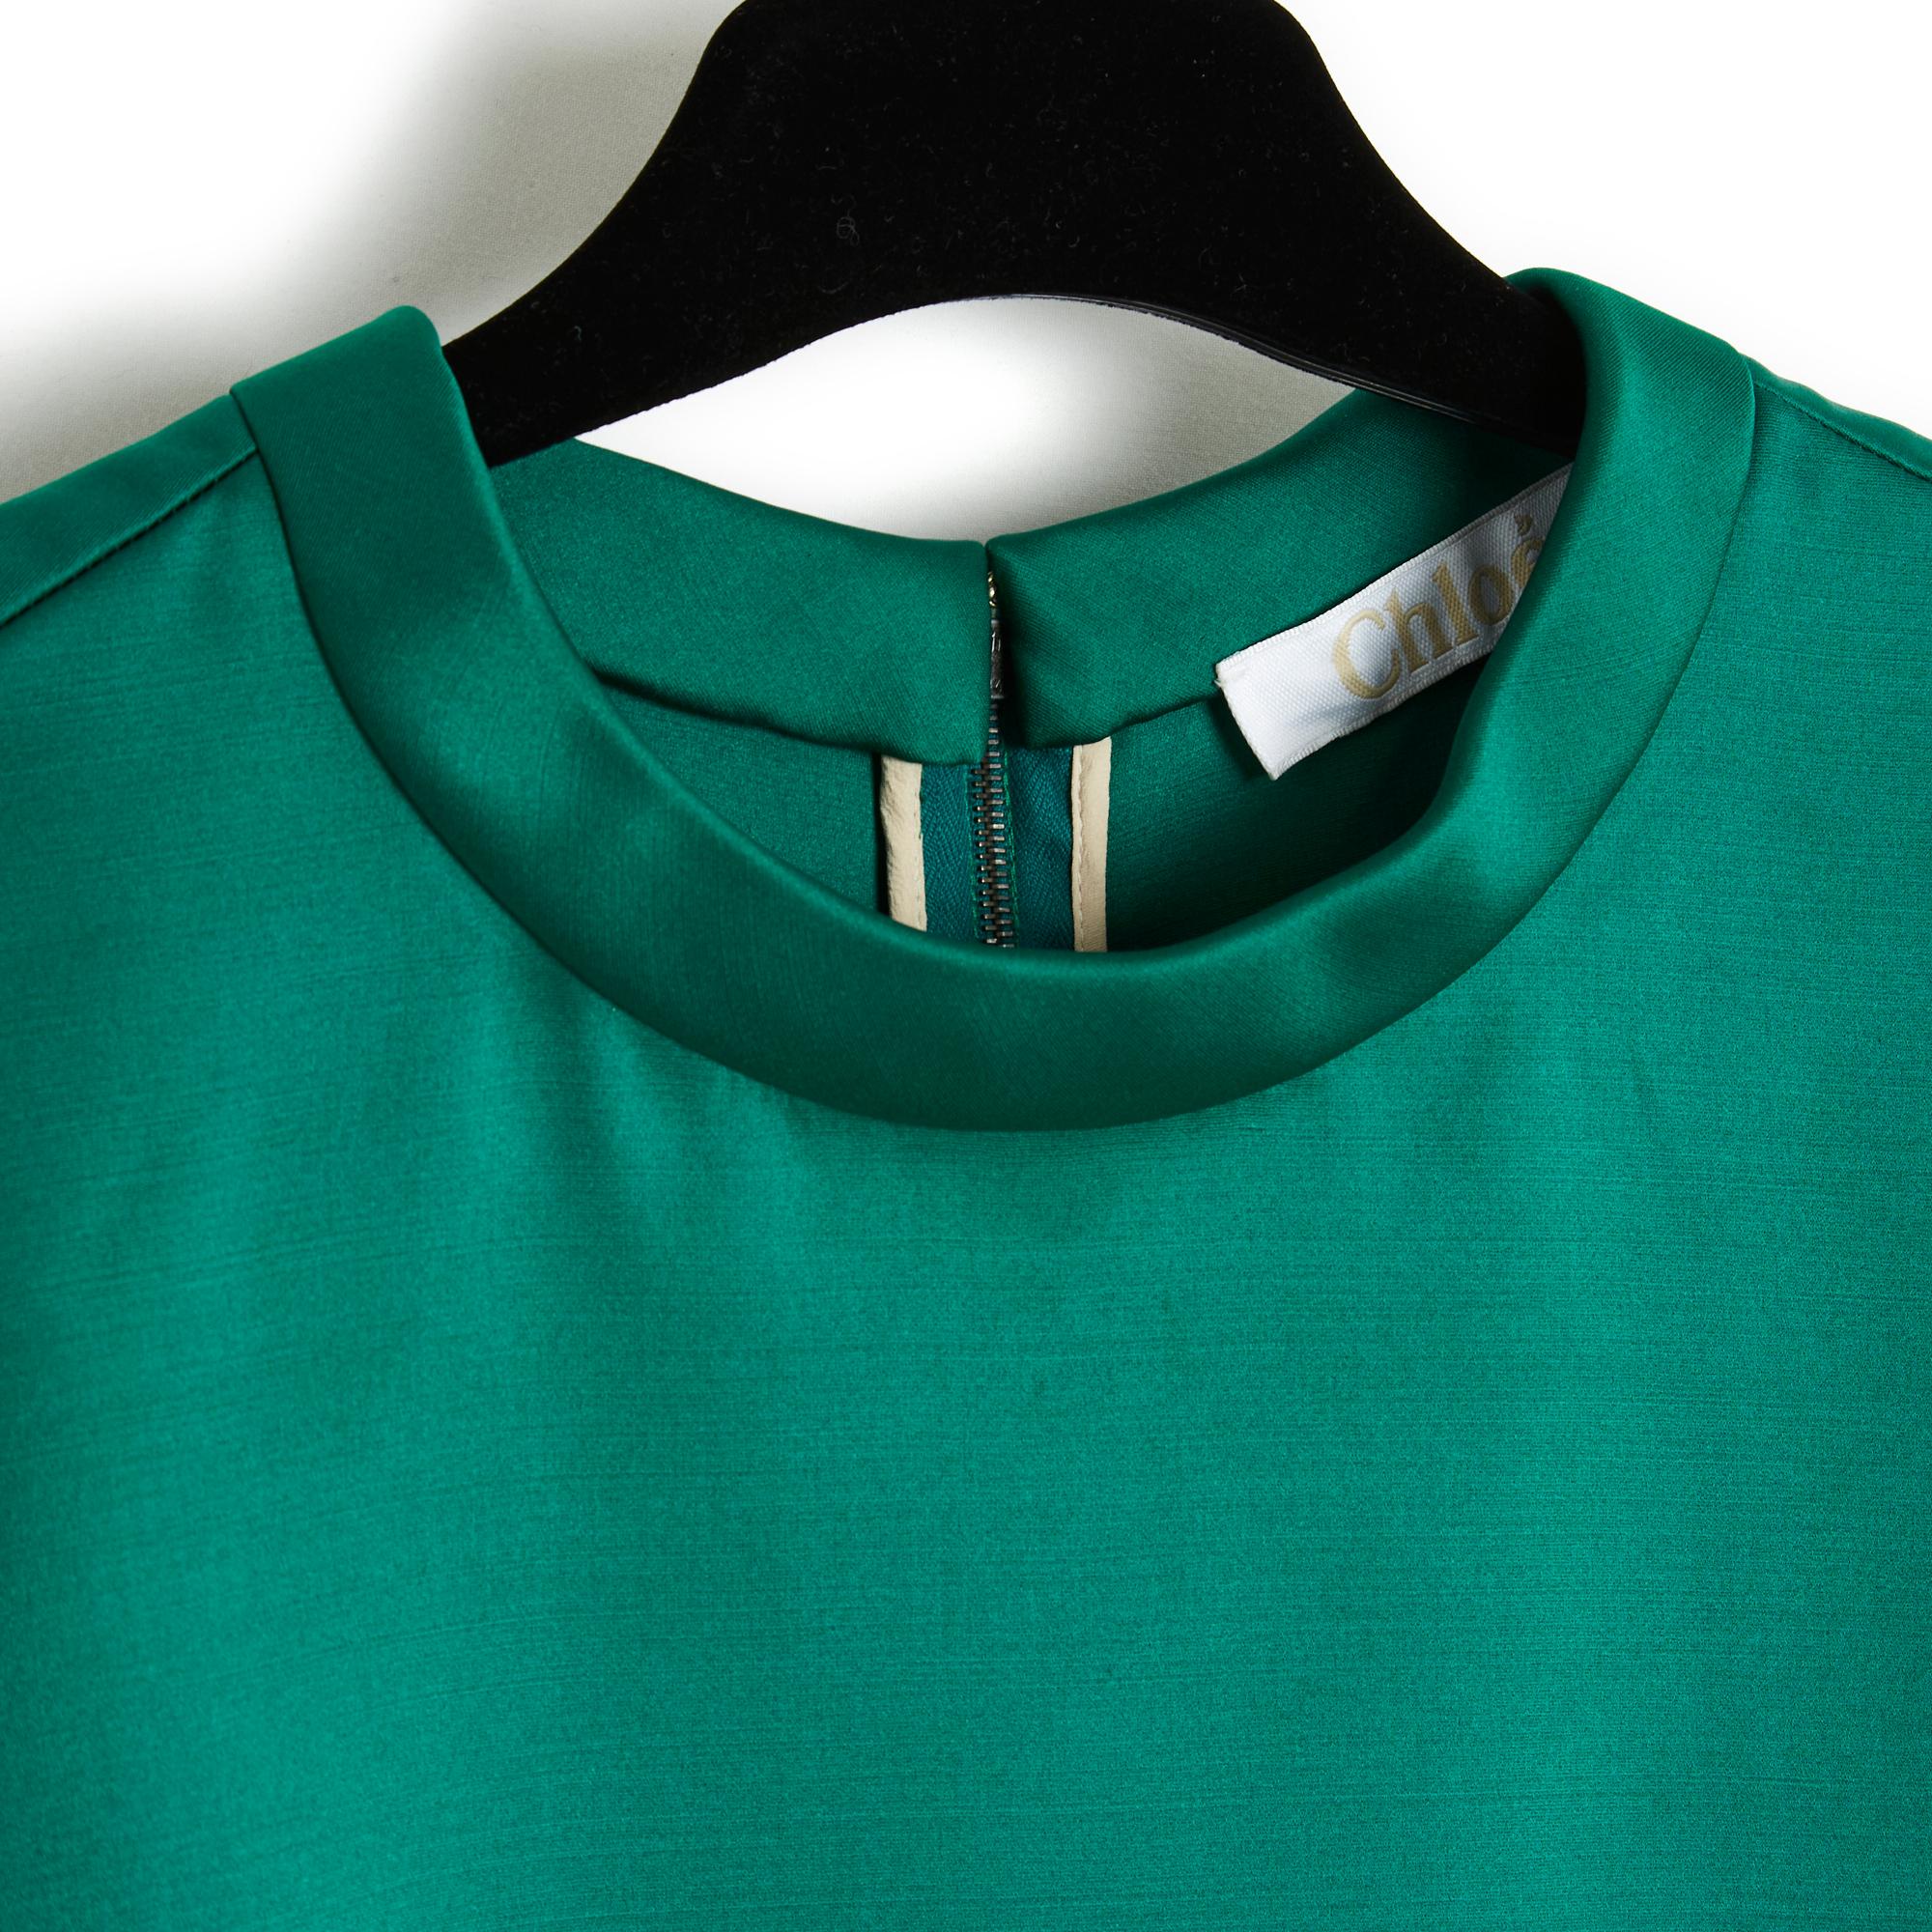 Chloé weites Oberteil im T-Shirt-Stil aus dickem Seidensatin (70%) und grasgrüner Wolle, Rundhalsausschnitt, kurze Ärmel, gerader und 